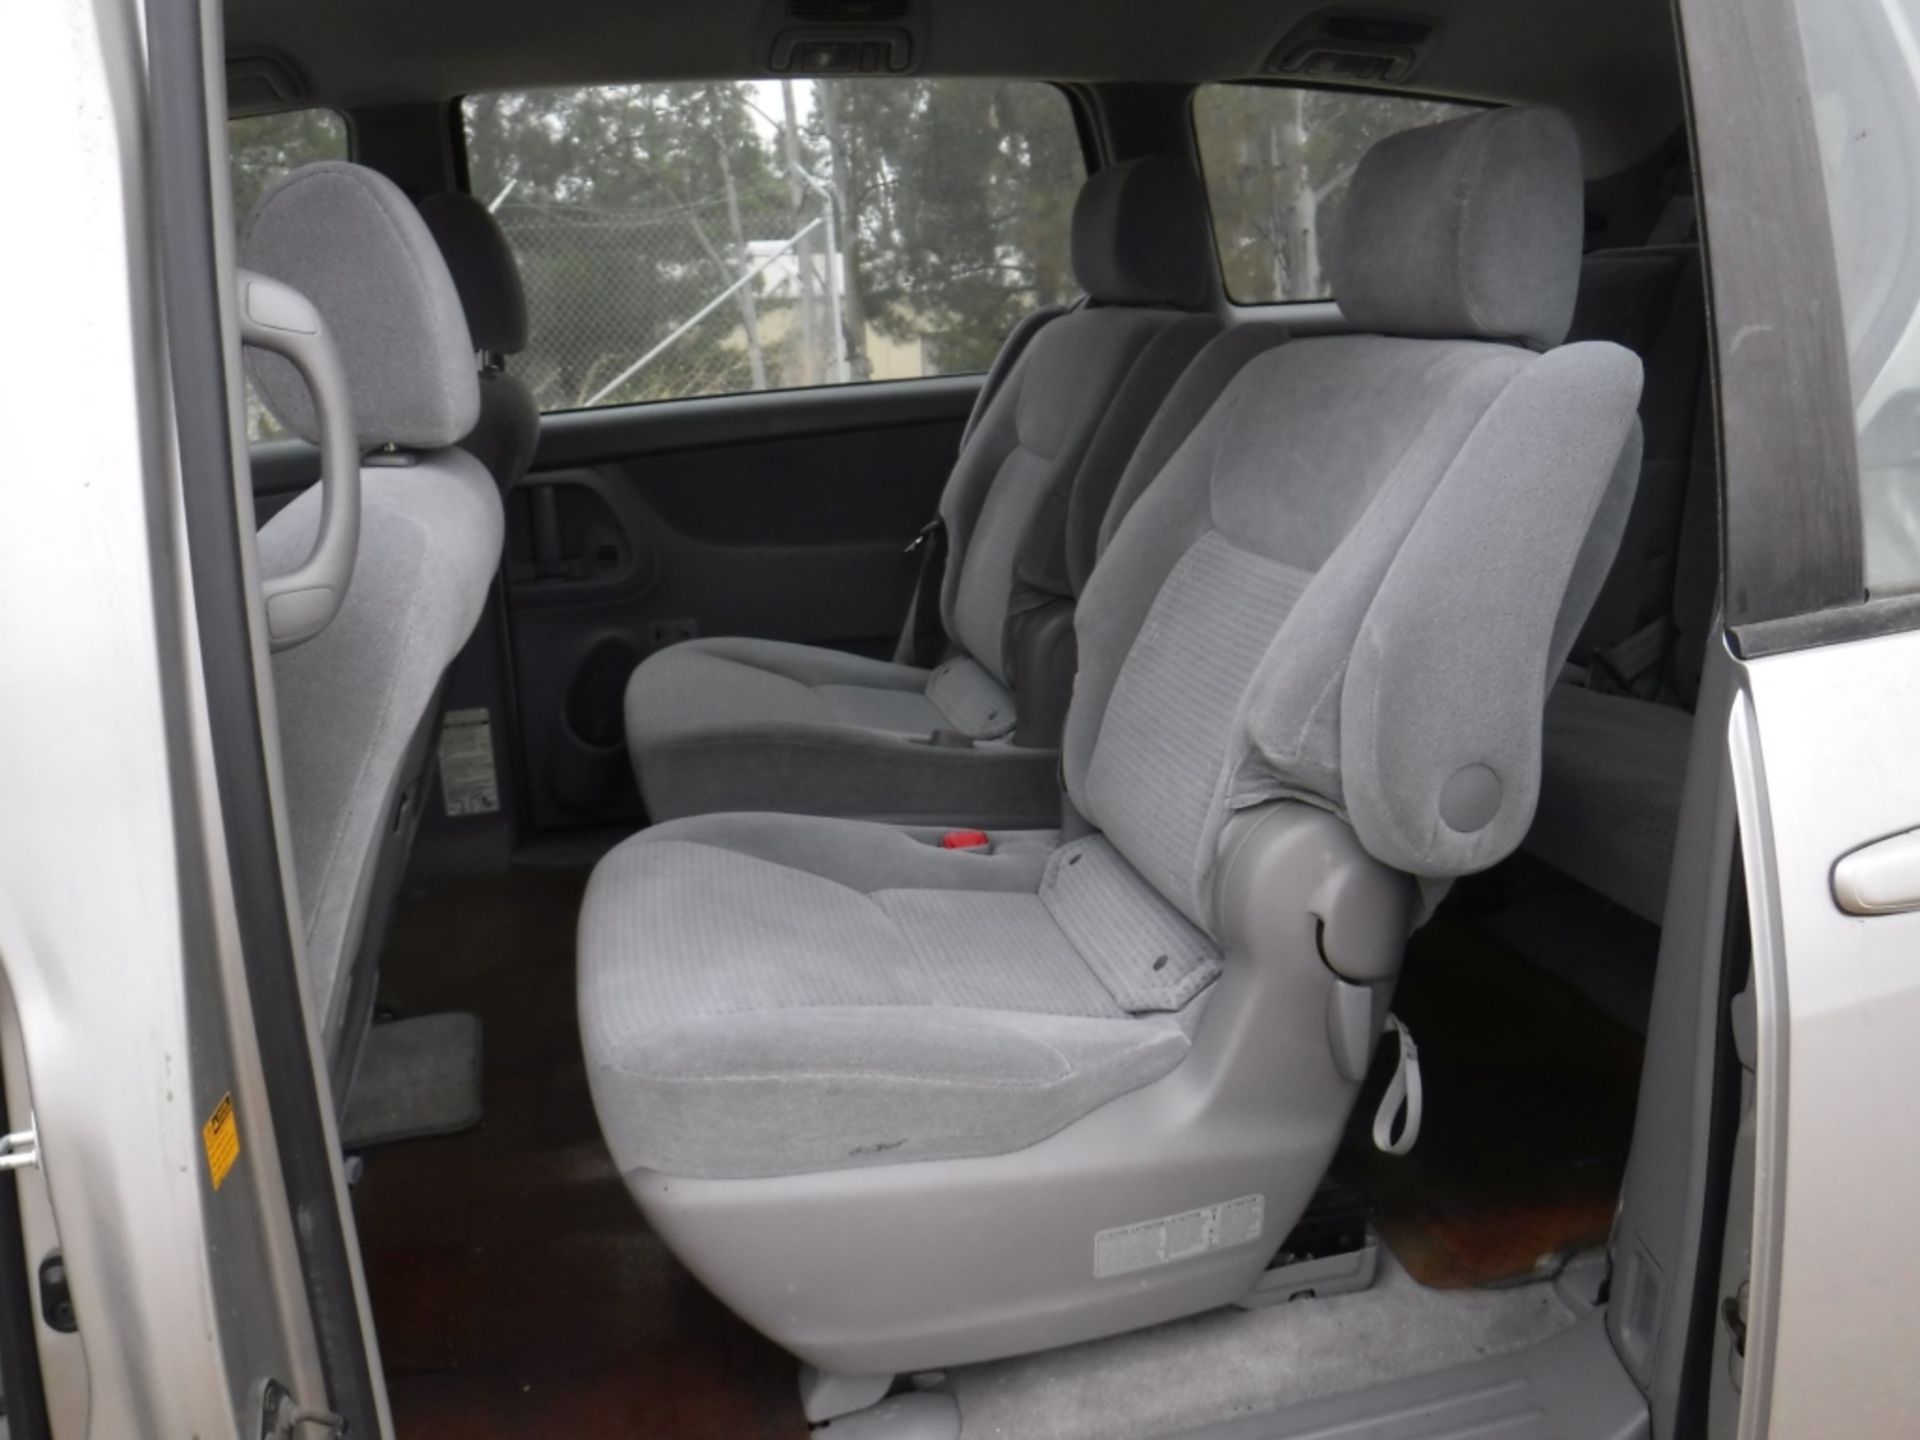 Toyota Sienna Mini Van, - Image 11 of 19